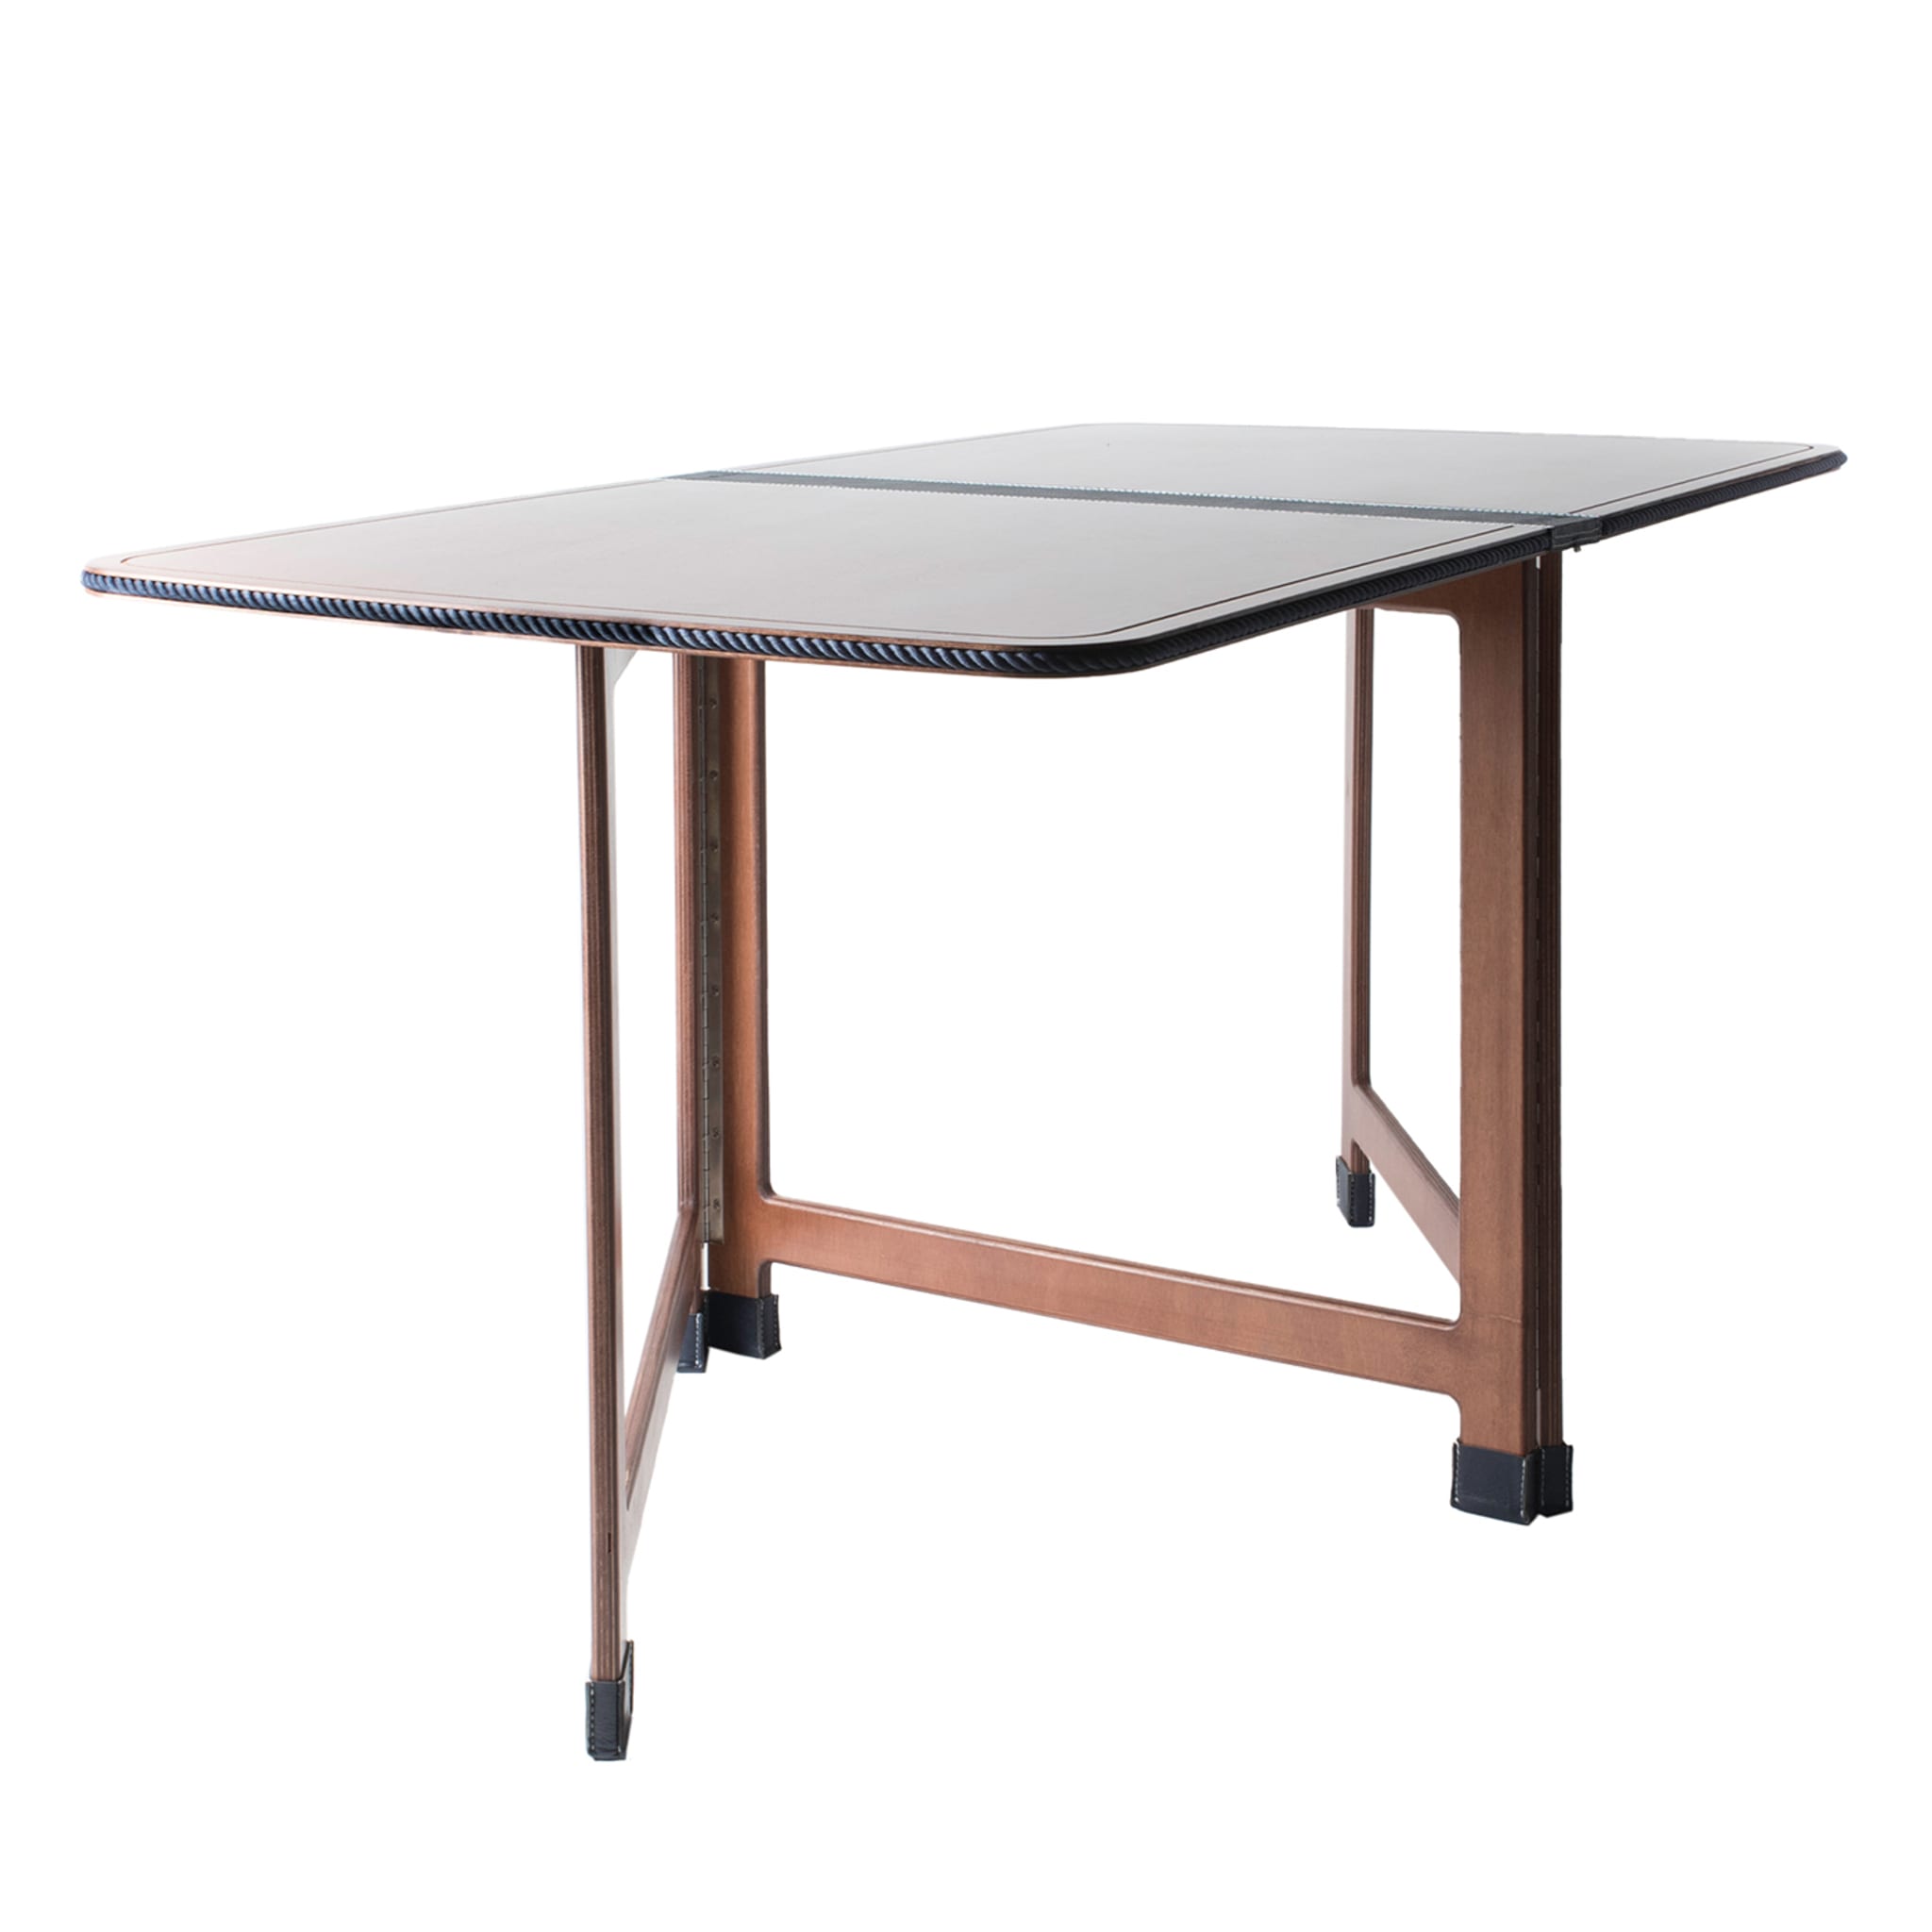 Table pliante rectangulaire avec insertion de cuir écologique bleu et de corde - Vue principale